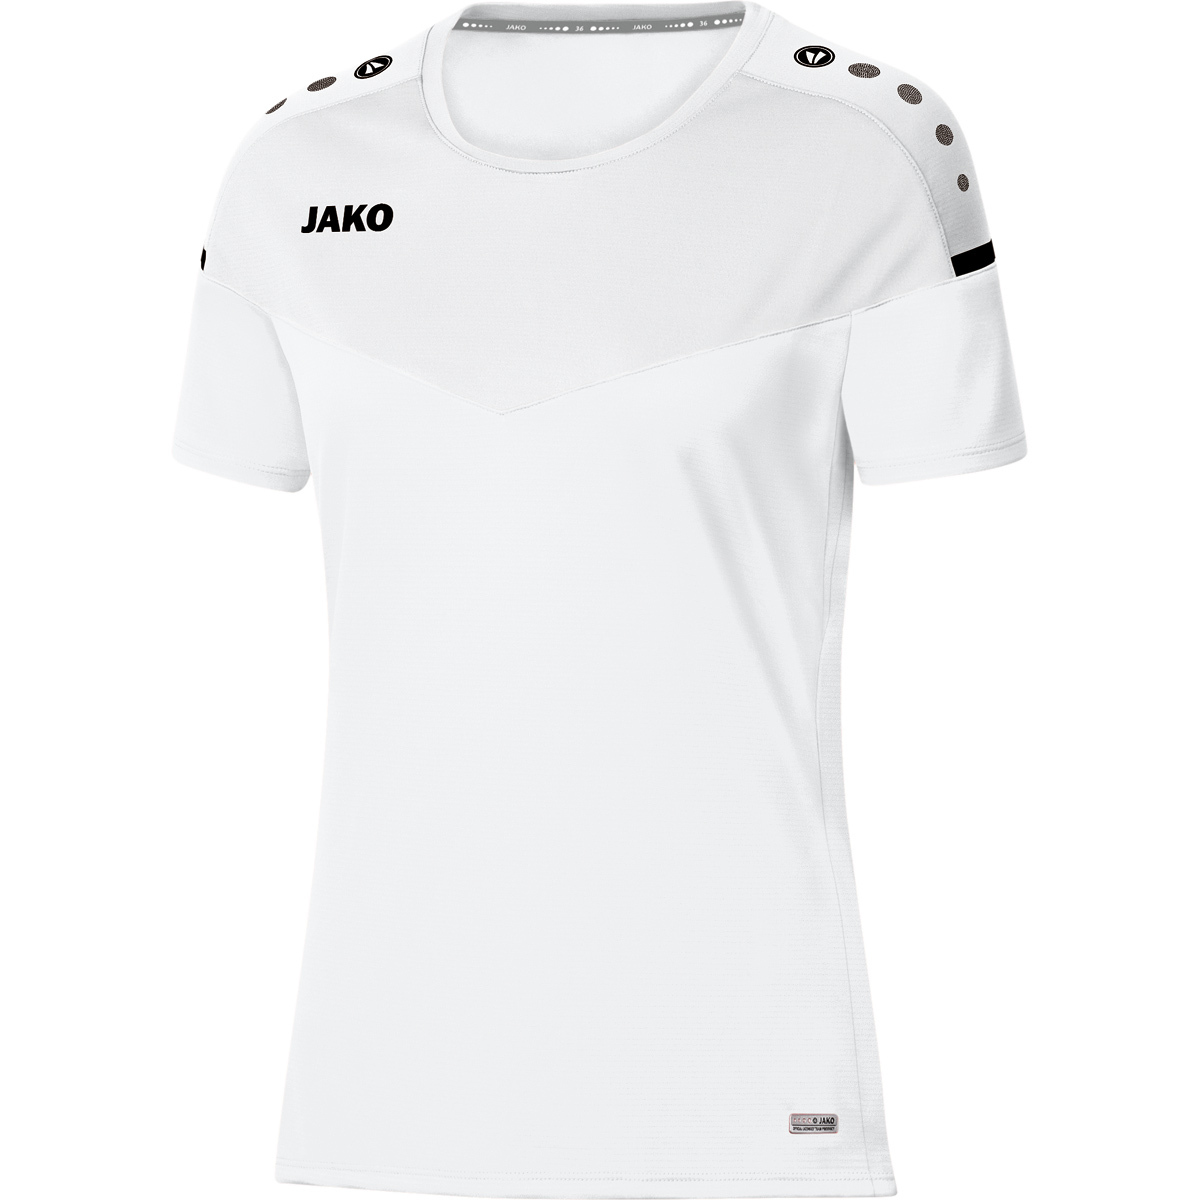 JAKO T-Shirt Champ 2.0 grau Herren Funktionsshirt Joggen Fitness Keep Dry 6120 